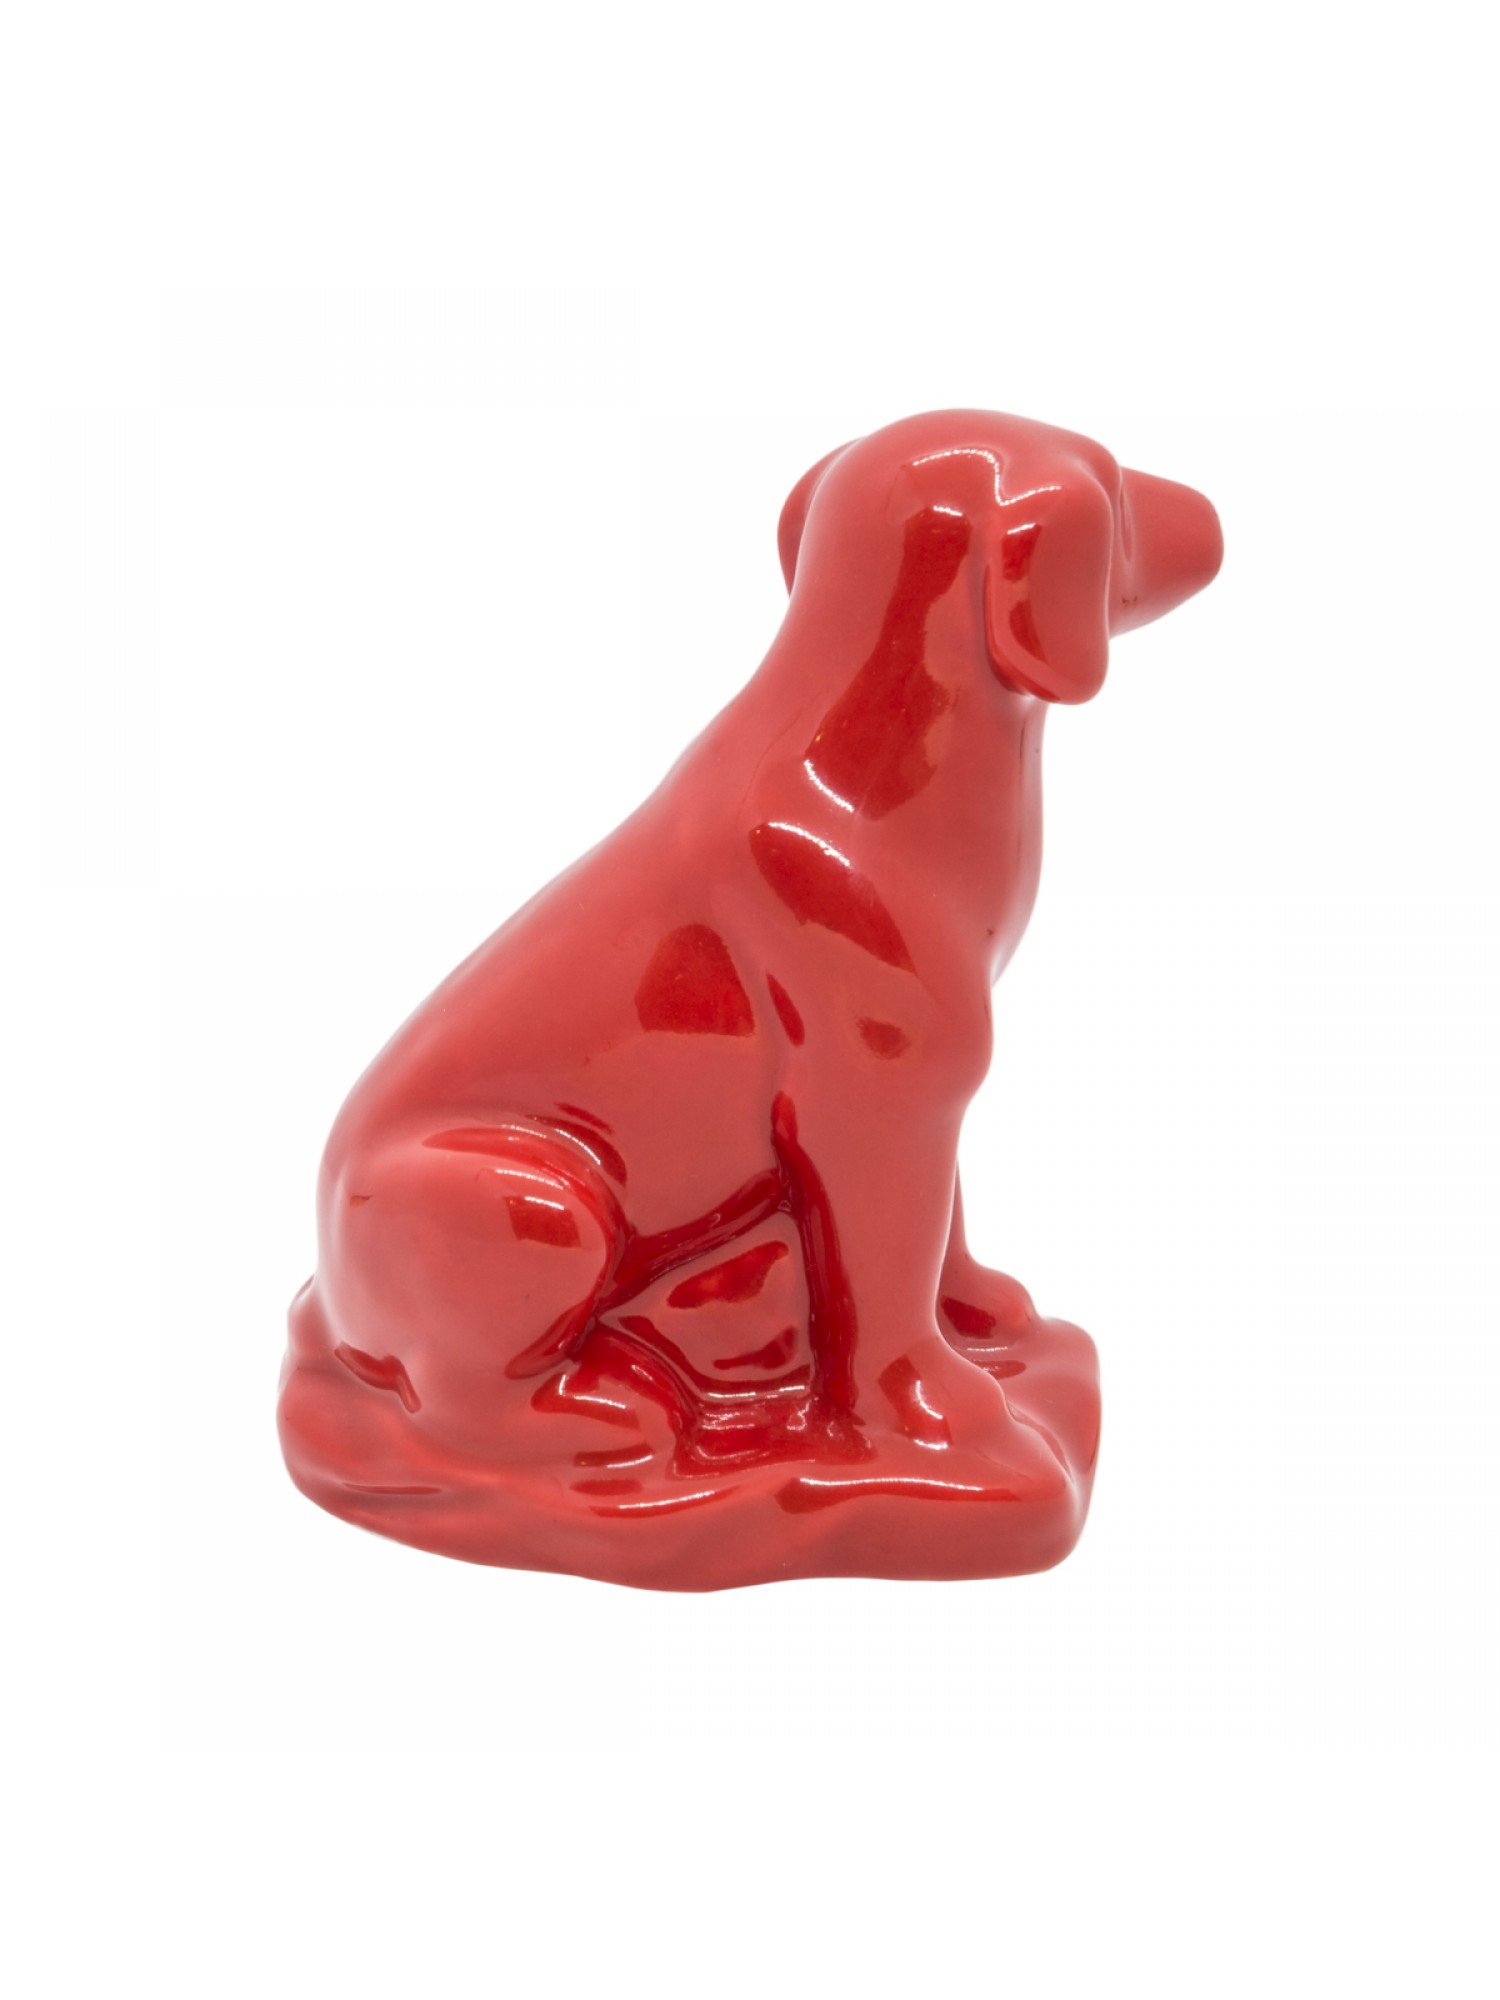 Статуэтка "Собака Красная" подарит вам хорошие дружеские связи и защитит вас от недоброжелателей